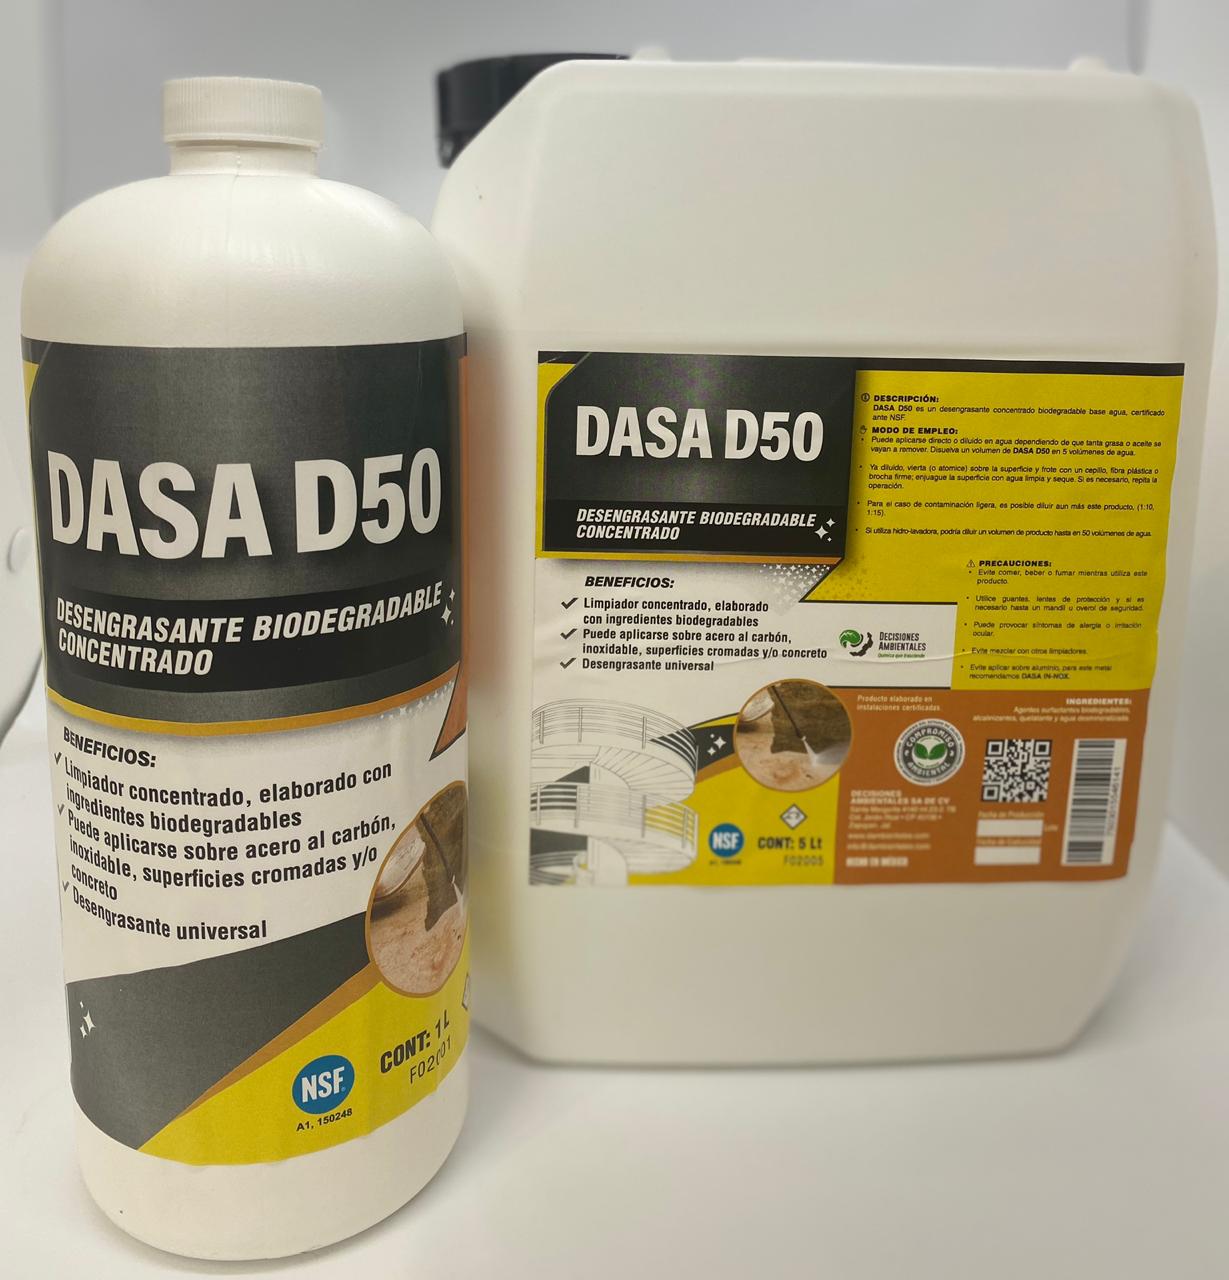 DASA D50